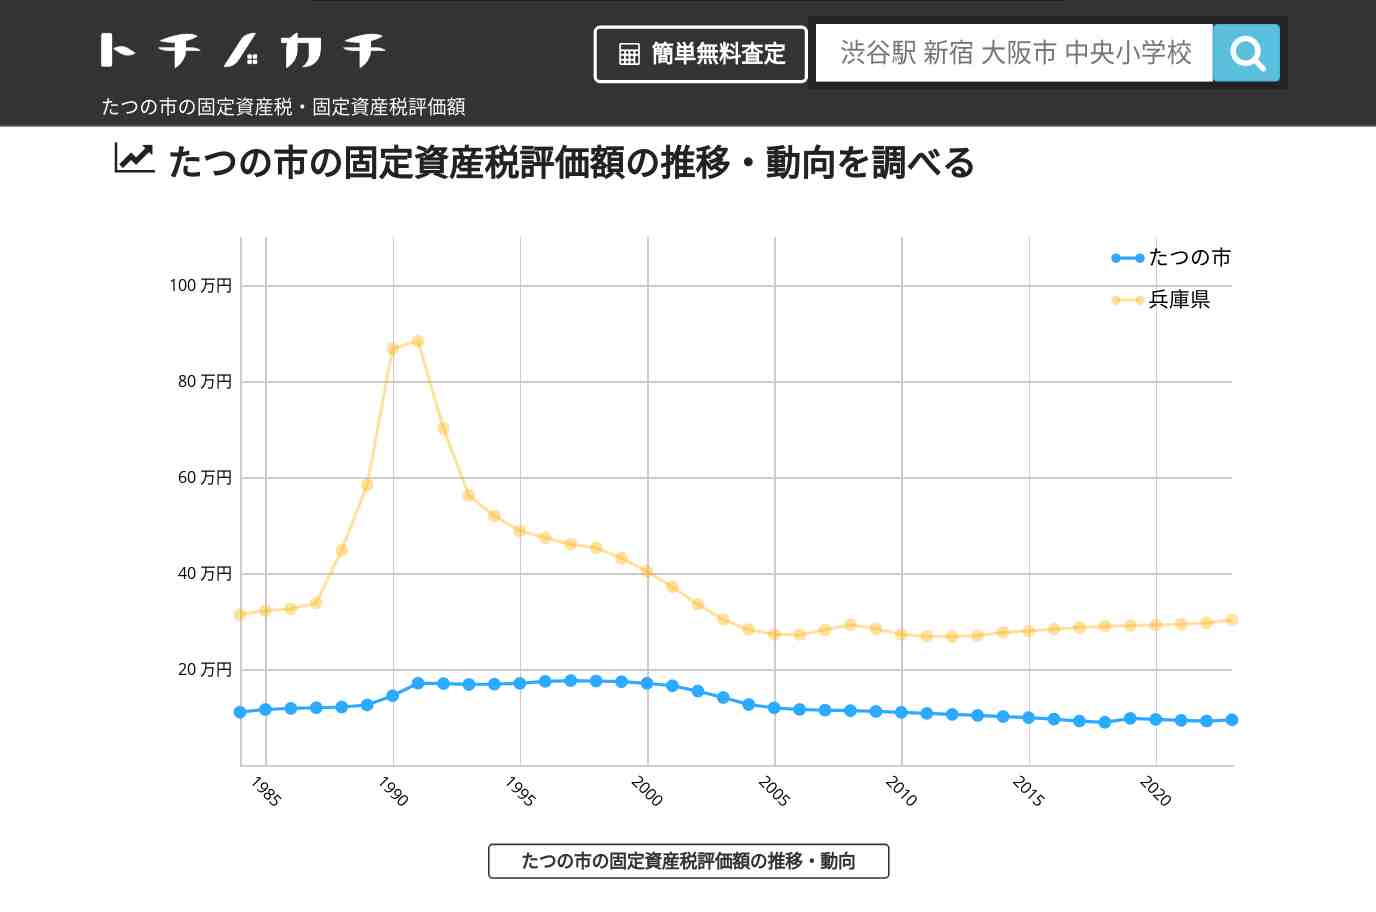 龍野小学校(兵庫県 たつの市)周辺の固定資産税・固定資産税評価額 | トチノカチ